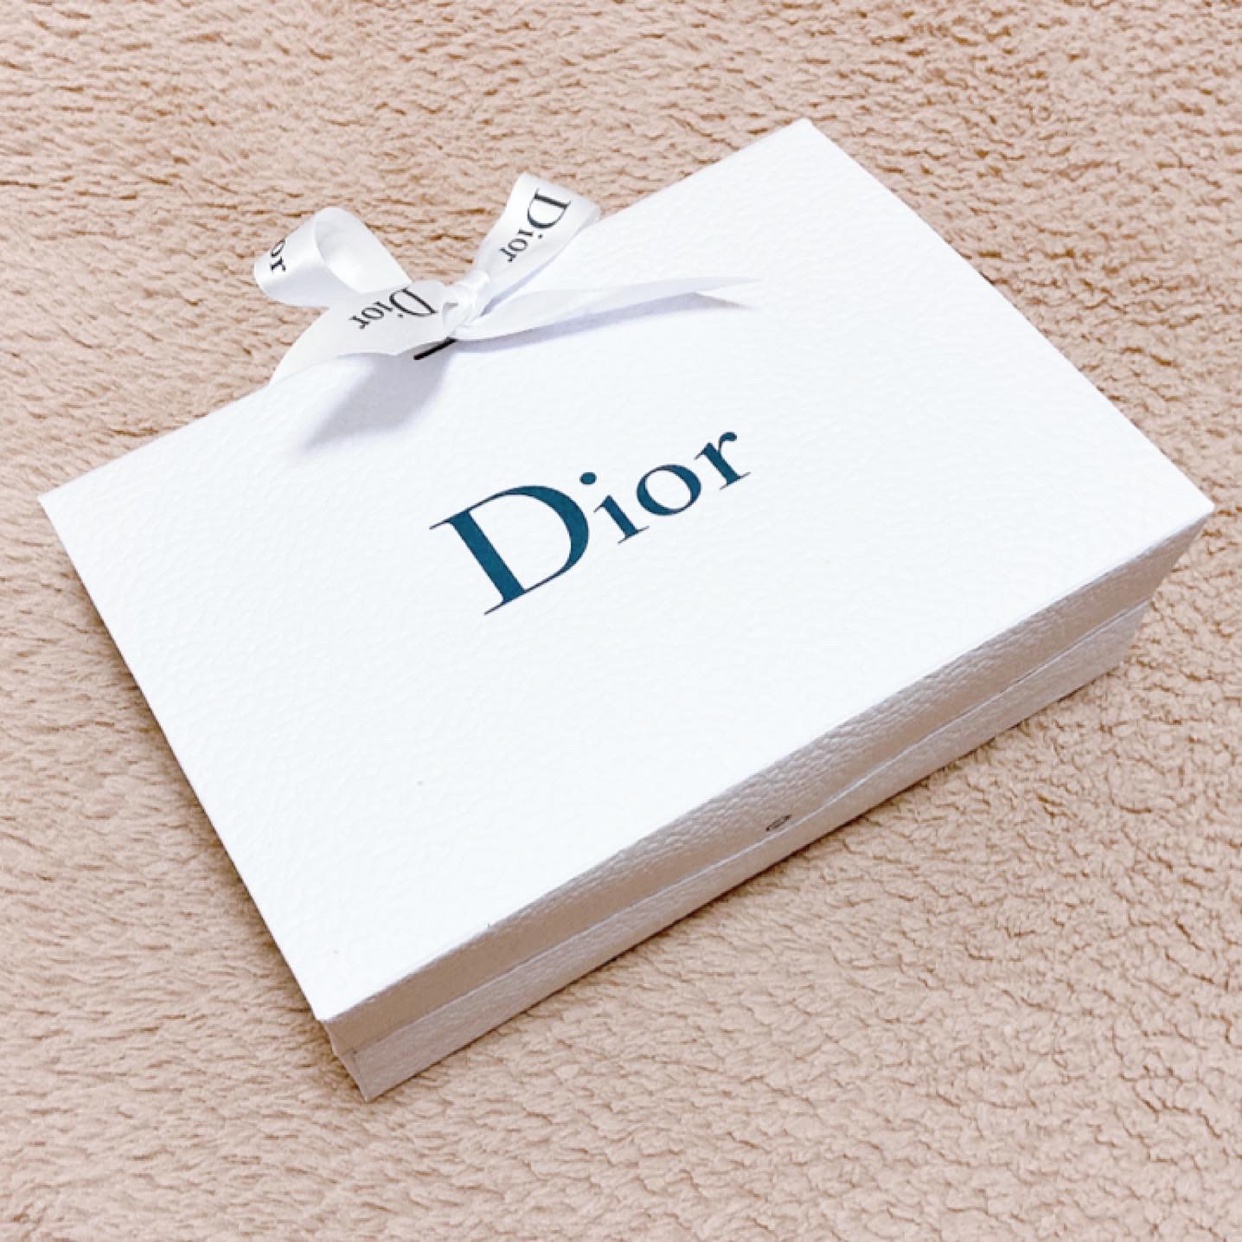 Dior(ディオール) アディクト リップ マキシマイザーを使ったyunaさんのクチコミ画像5